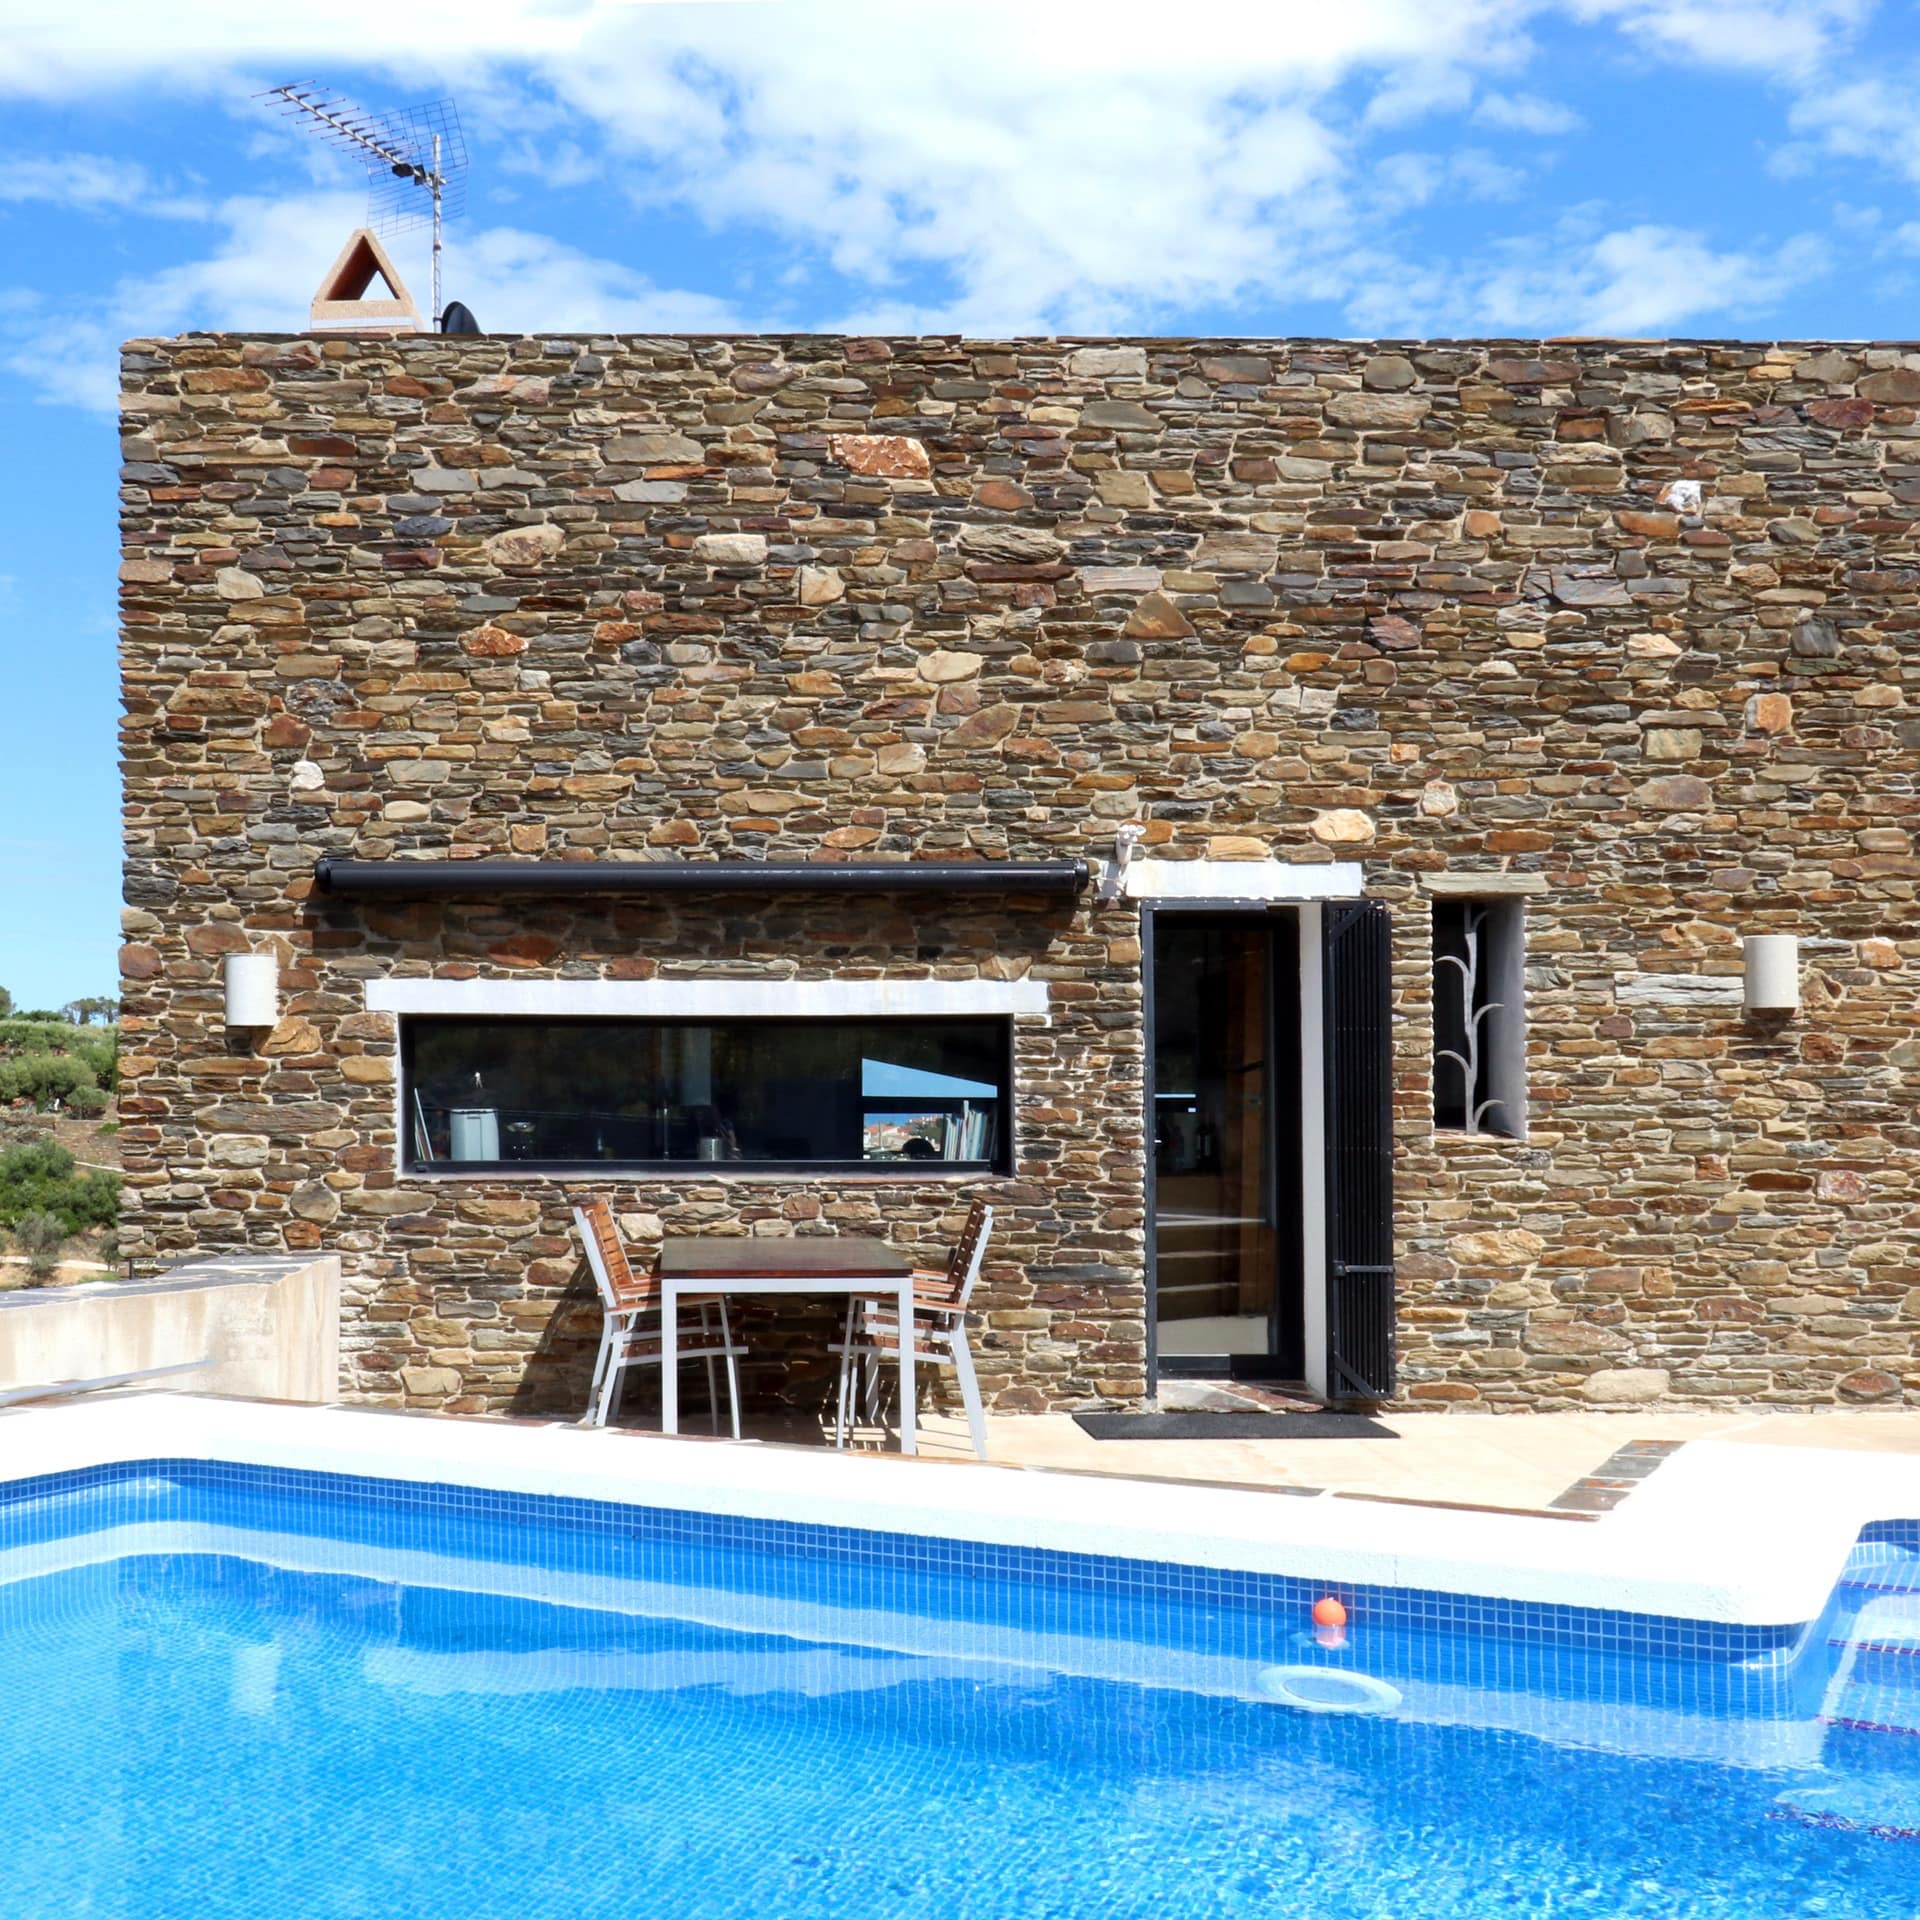 Casa rural con piscina para disfrutar de un buen baño con vistas